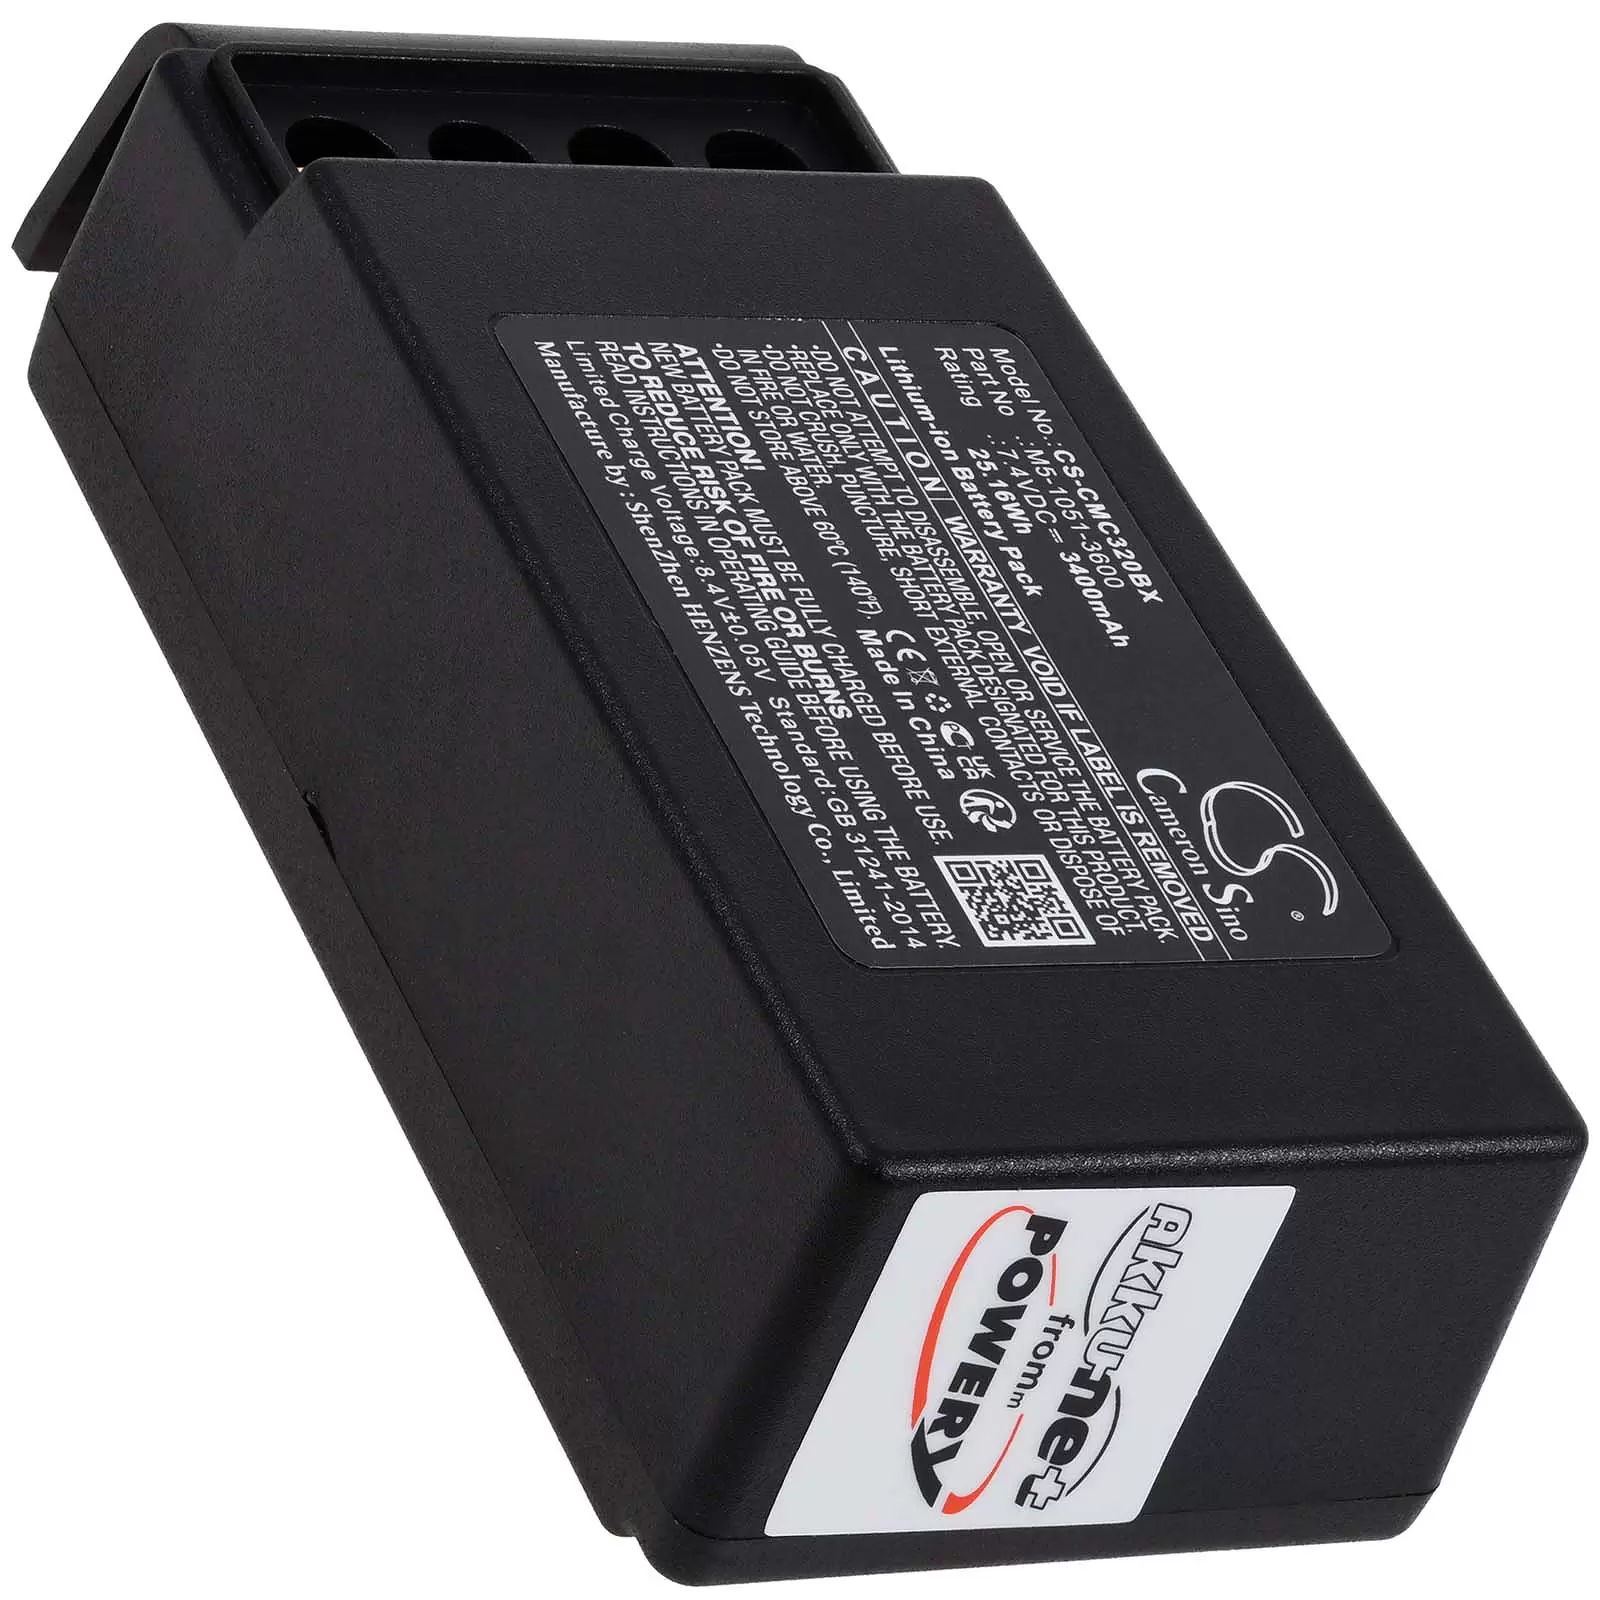 Powerakku passend für Kran-Funkfernsteuerung Cavotec MC-3000,MC-3, Typ M5-1051-3600, nur 2 Kontakte